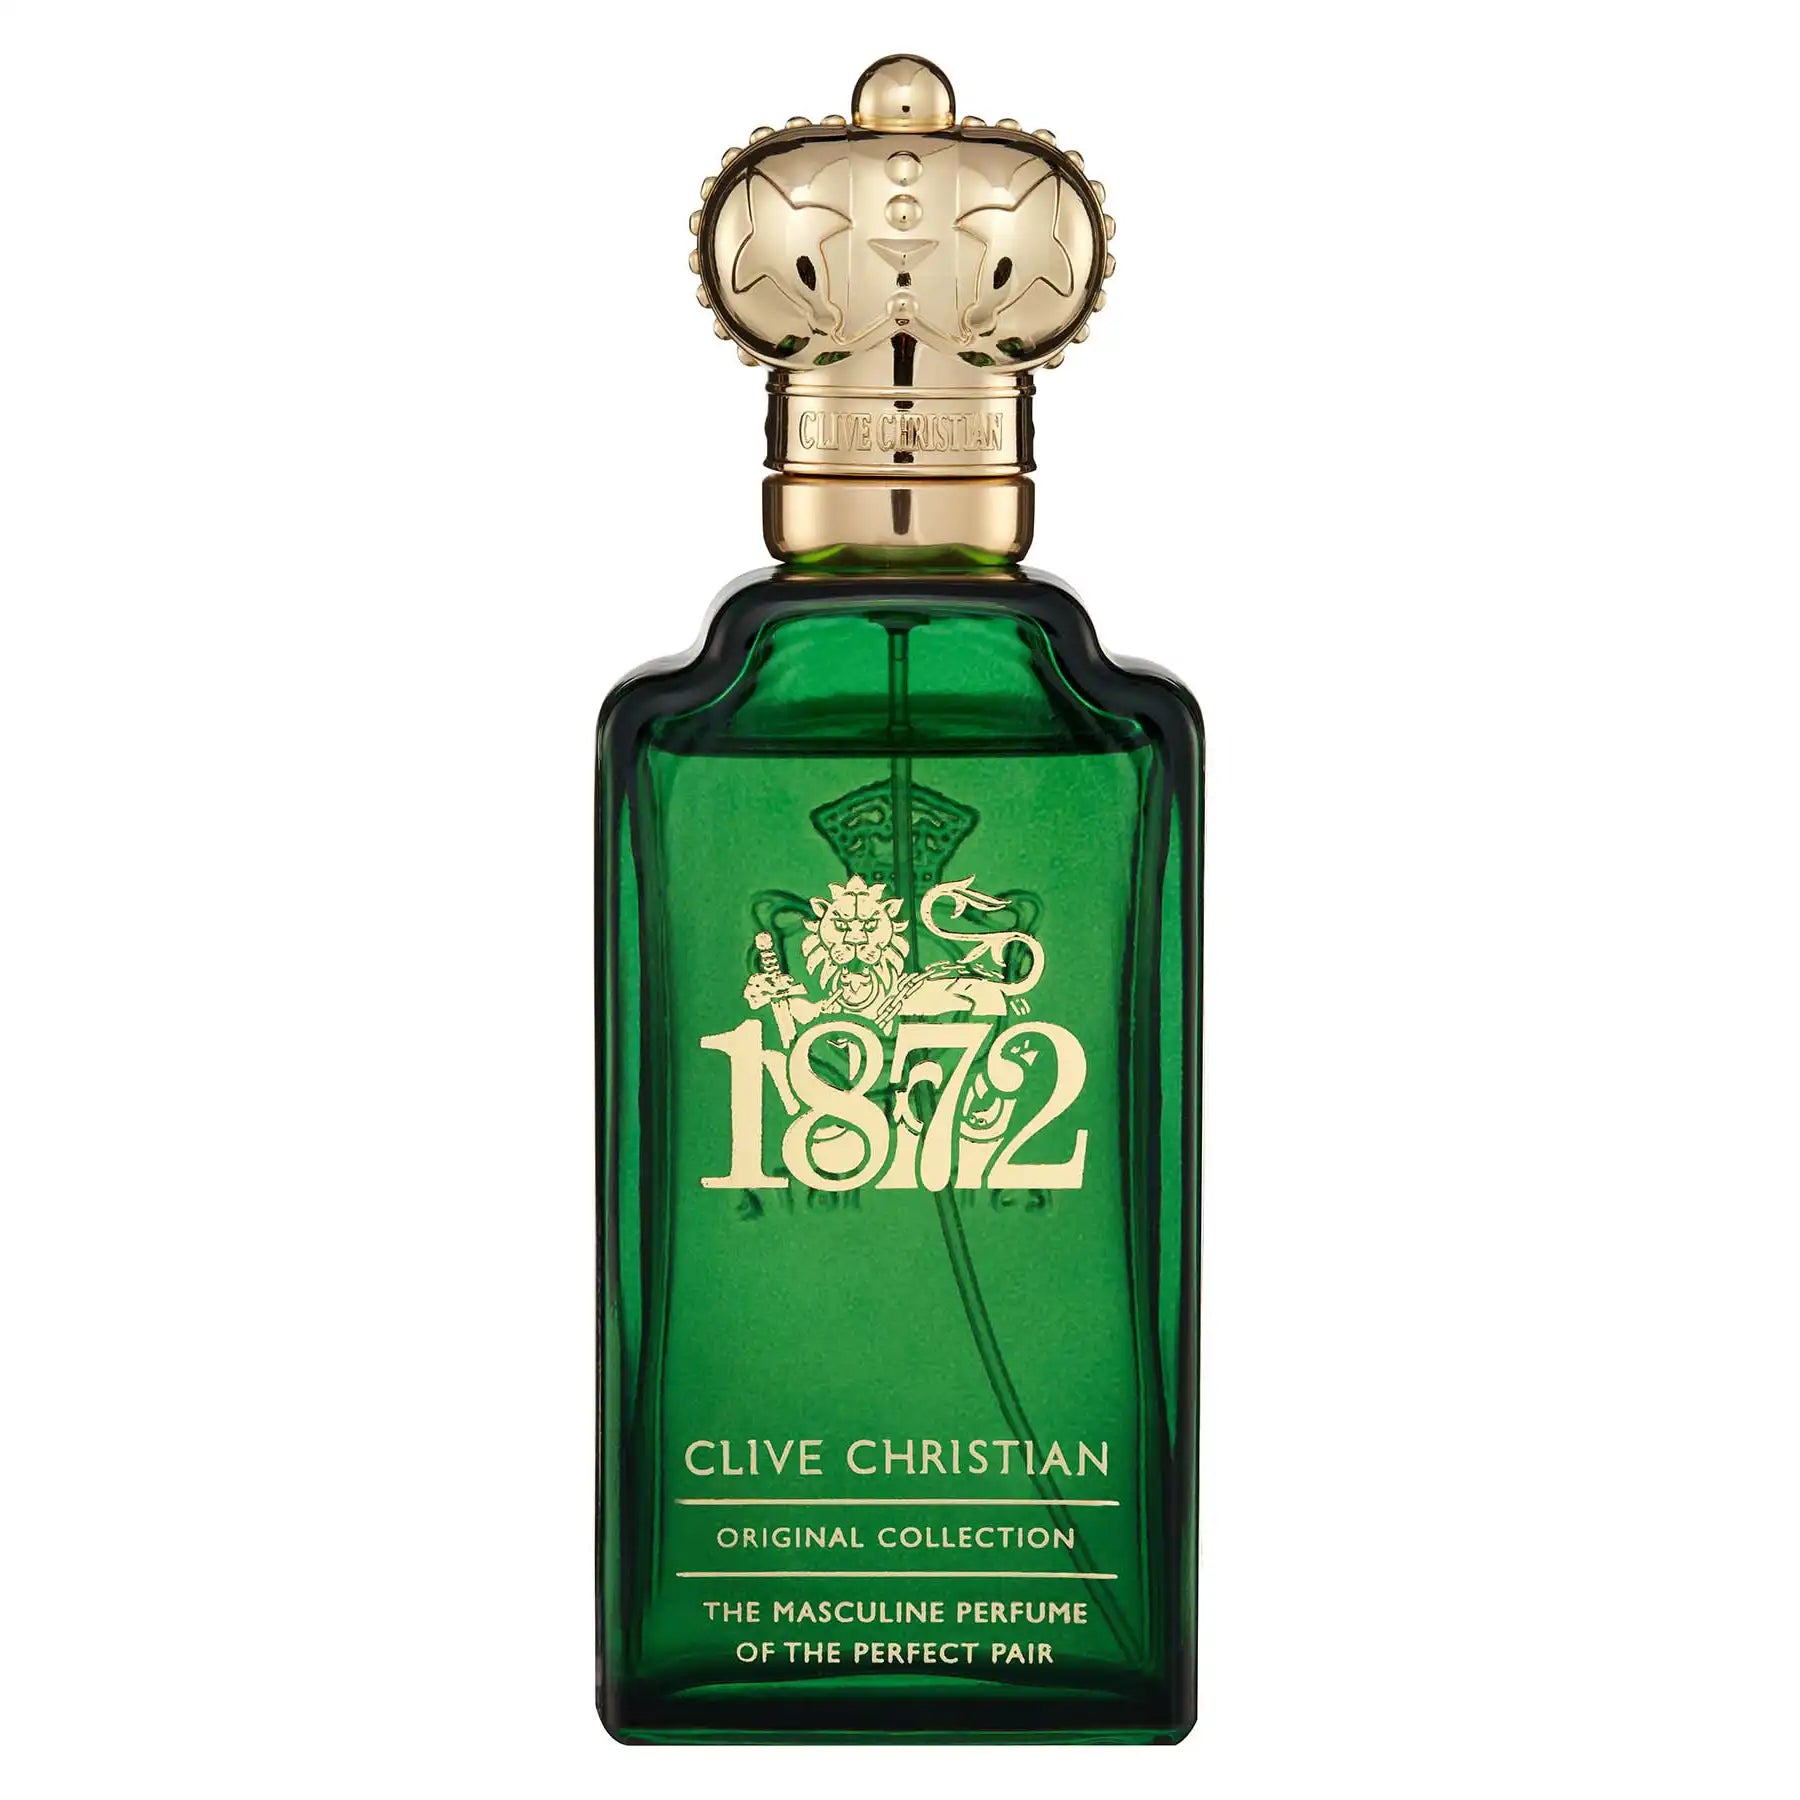 Clive Christian 1872 Masculine Edition Eau de Parfum 100ml